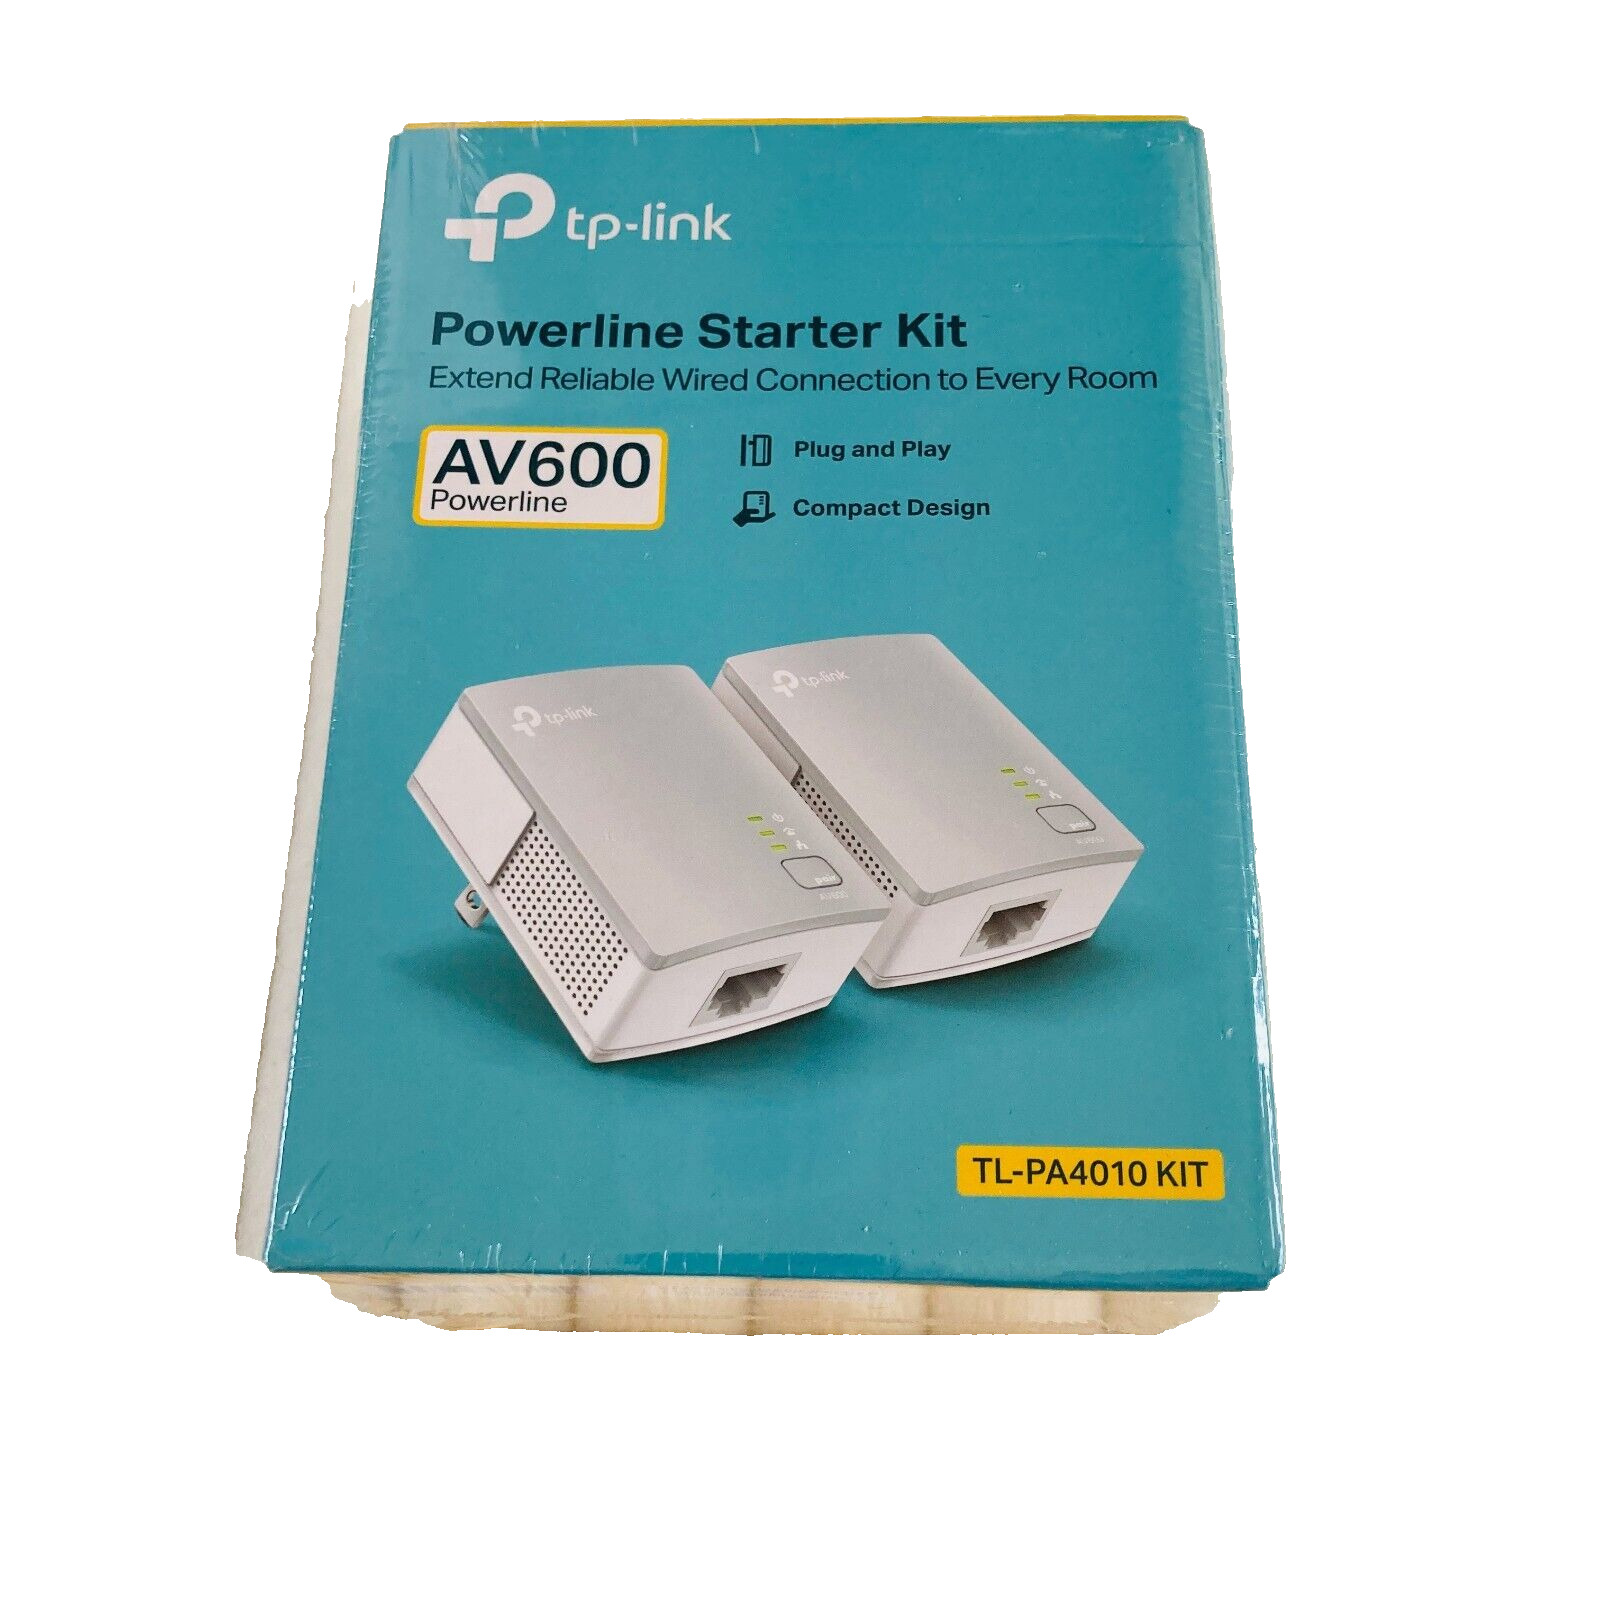 TP-Link AV600 600Mbps Powerline Starter Kit TL-PA4010 KIT White - New Sealed Box